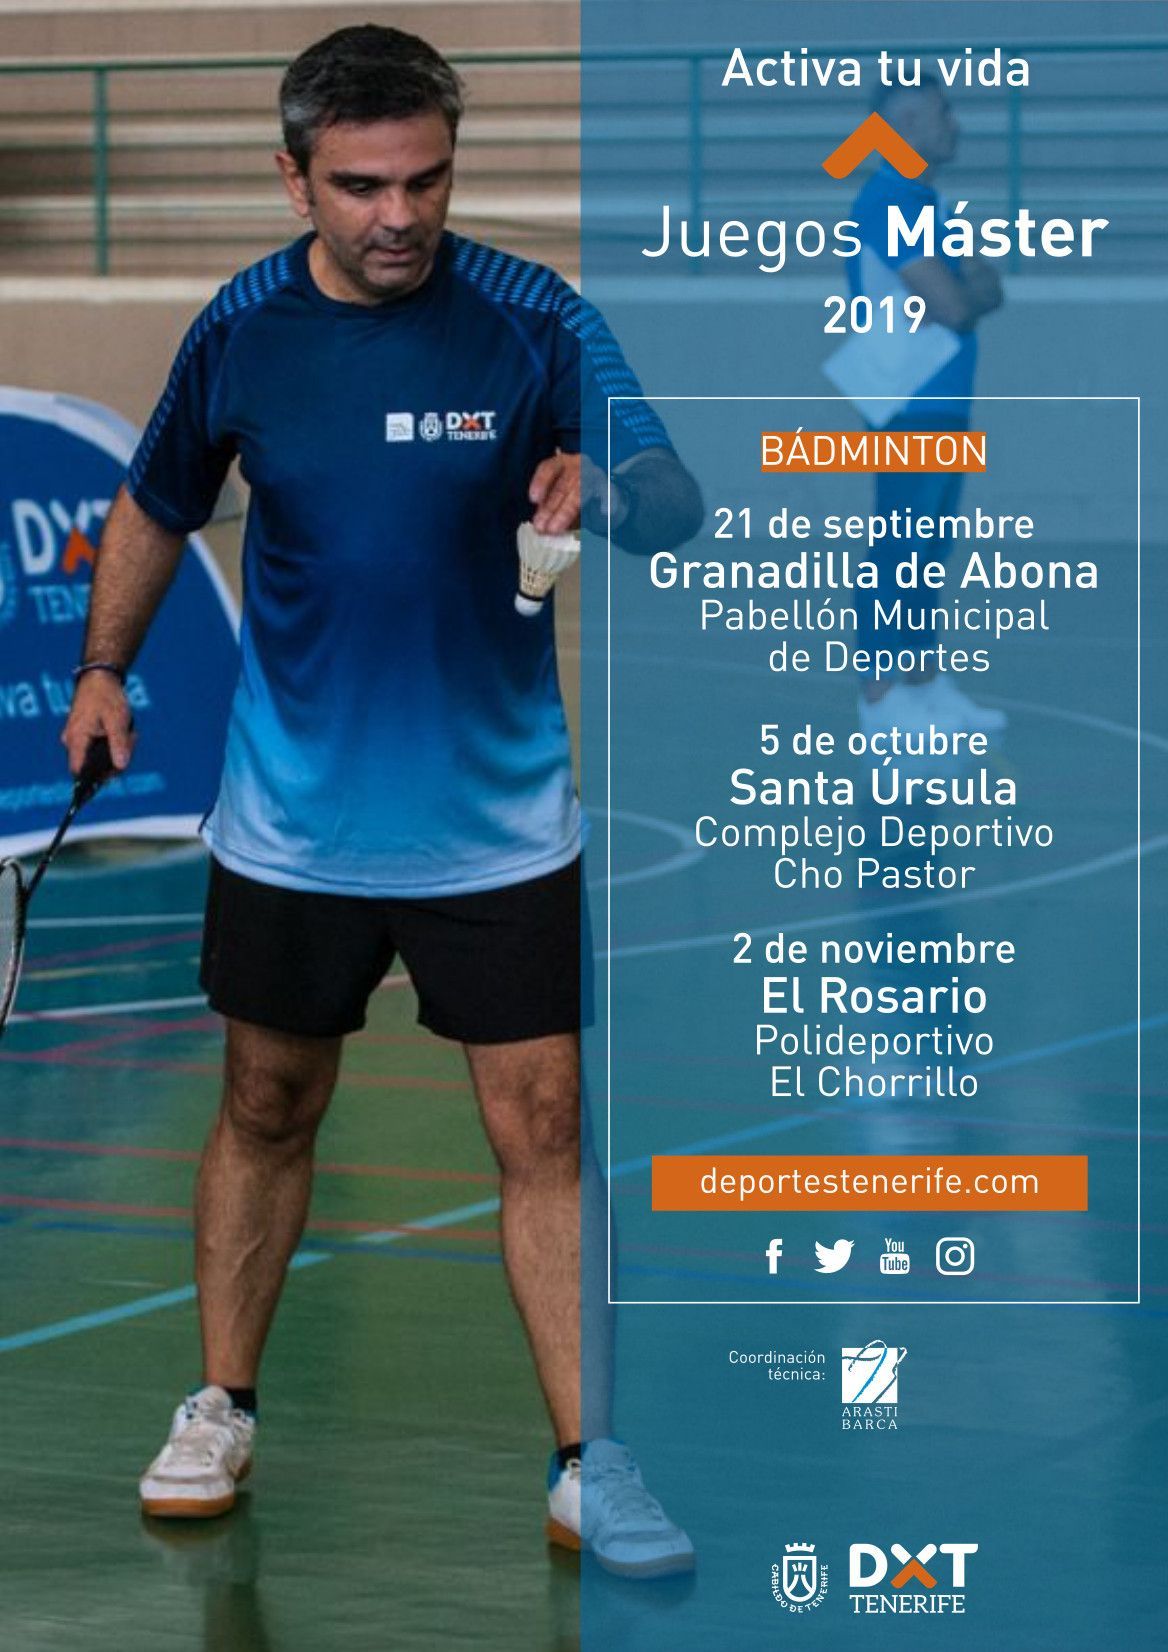 Bádminton Juegos Máster 2019